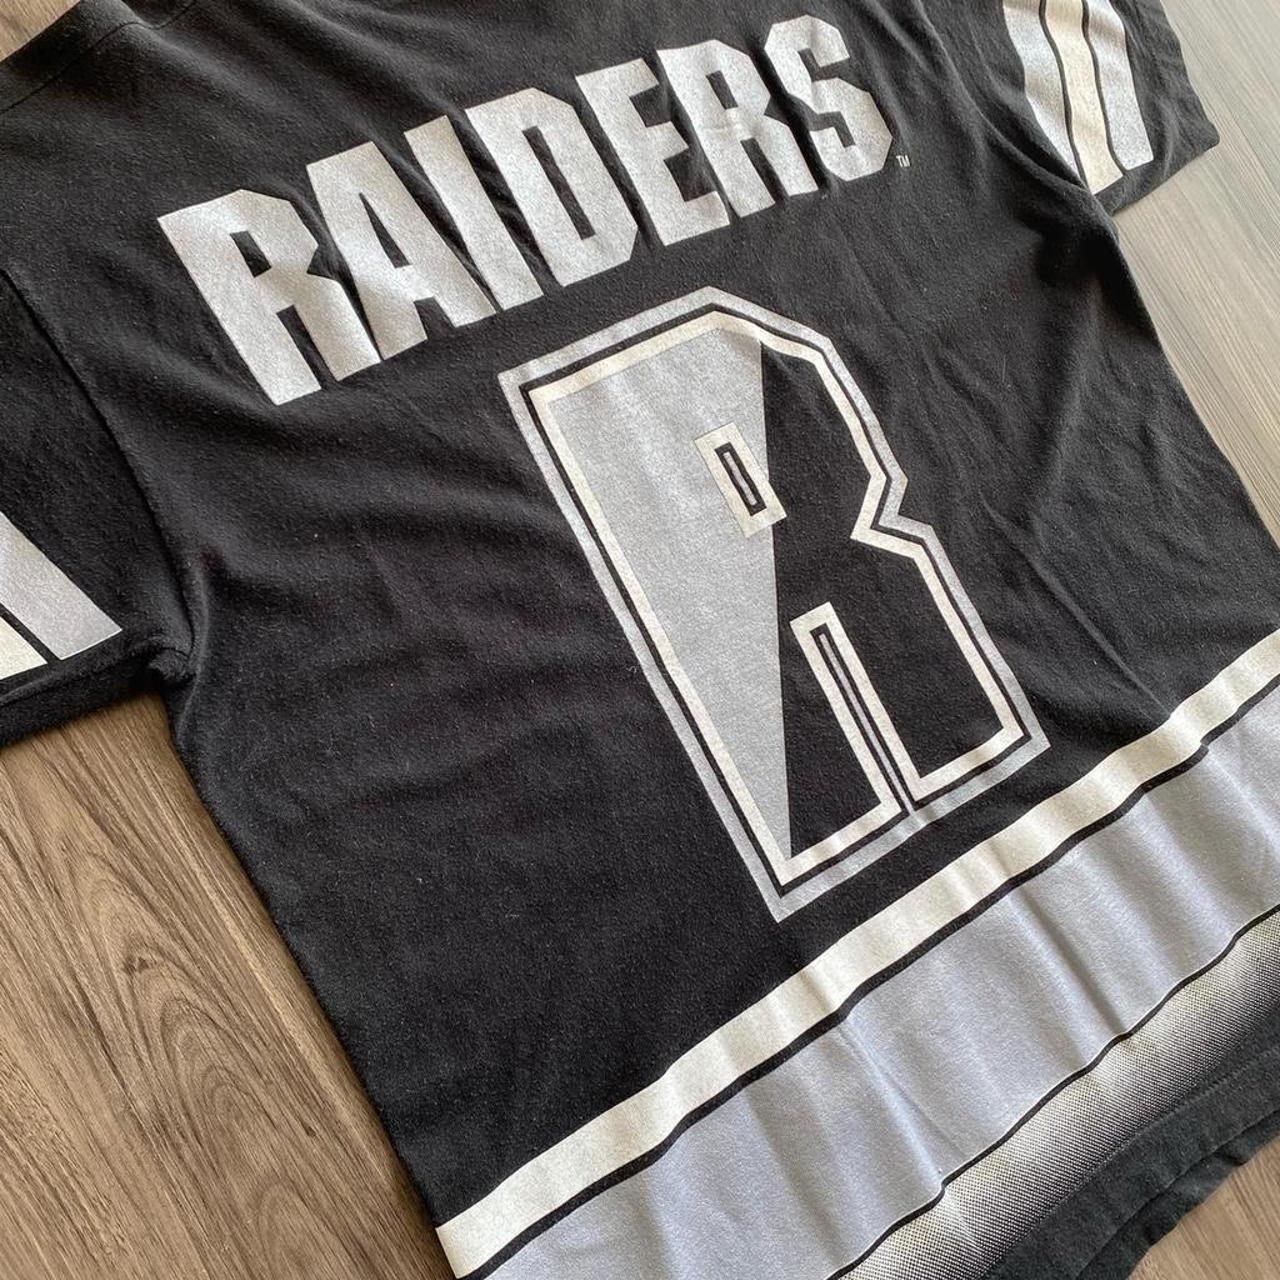 Vintage Oakland Raiders T Shirt , Sliver & Black...